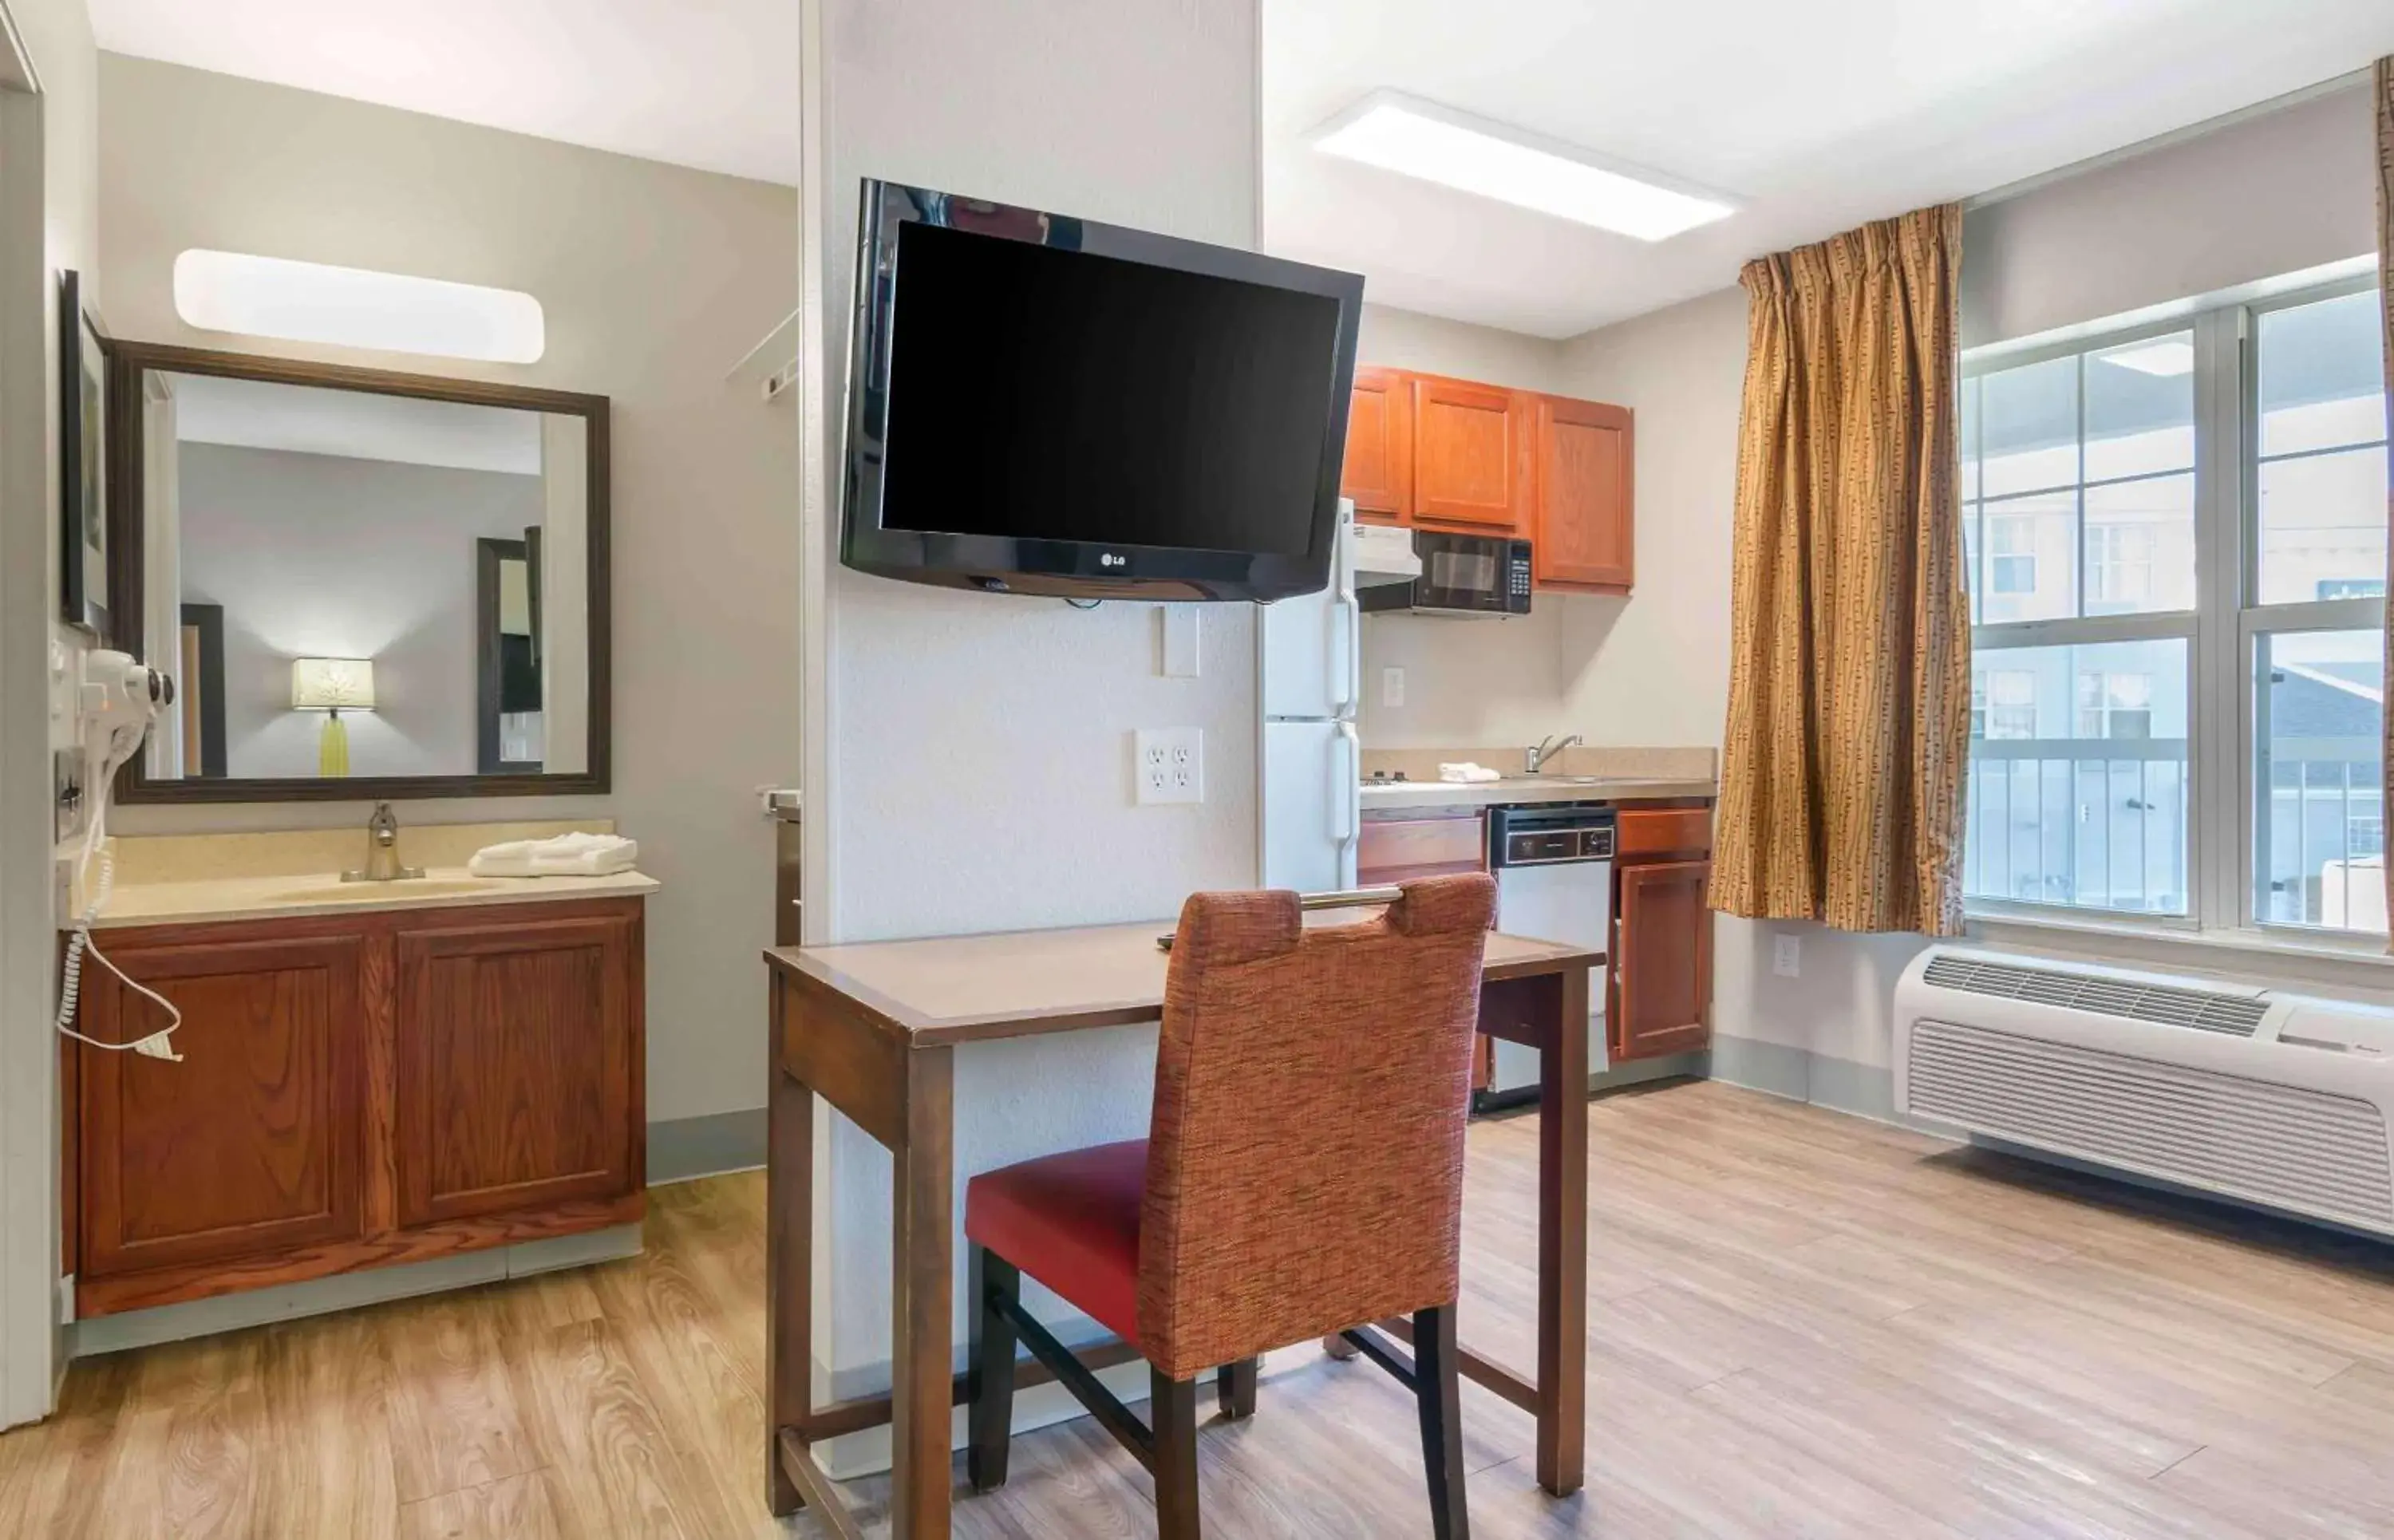 Bedroom, TV/Entertainment Center in Extended Stay America Suites - Kansas City - Lenexa - 87th St